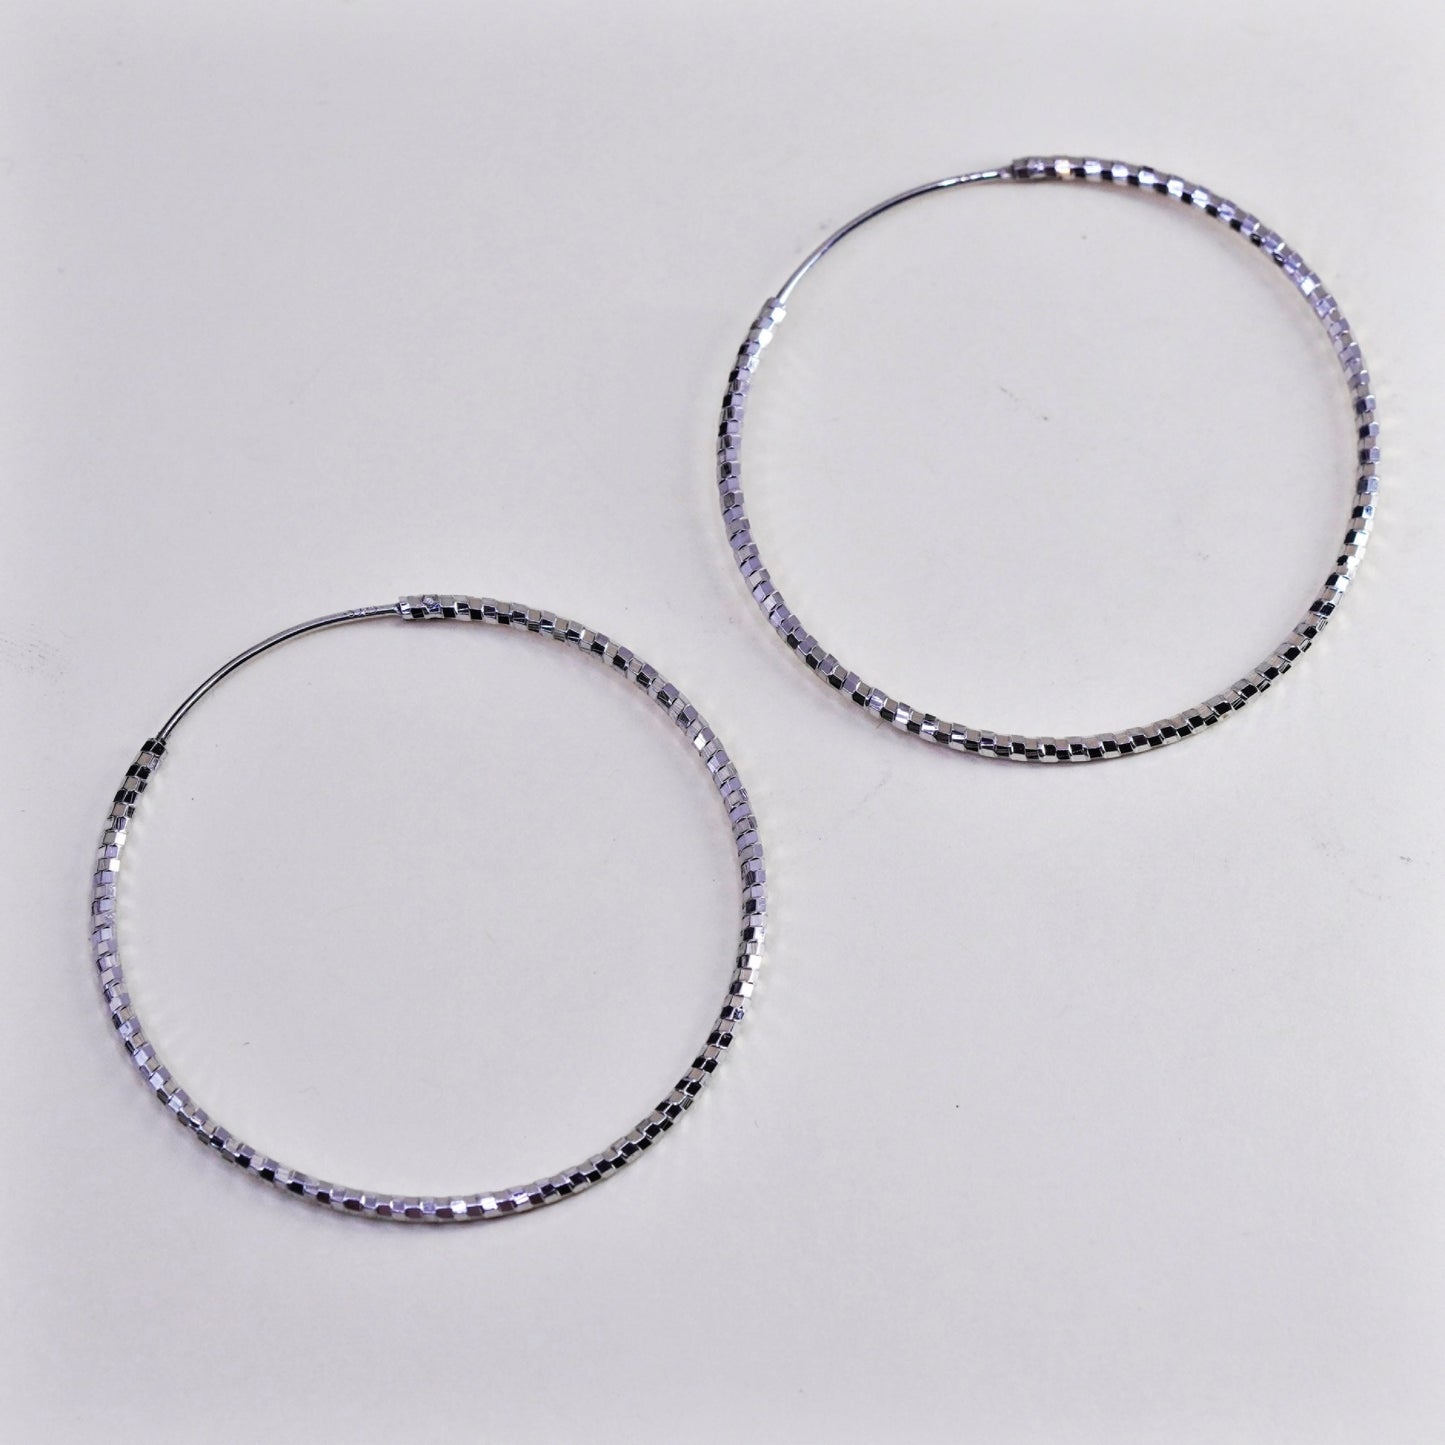 1.75”, vtg sterling silver loop earrings, textured minimalist primitive hoops